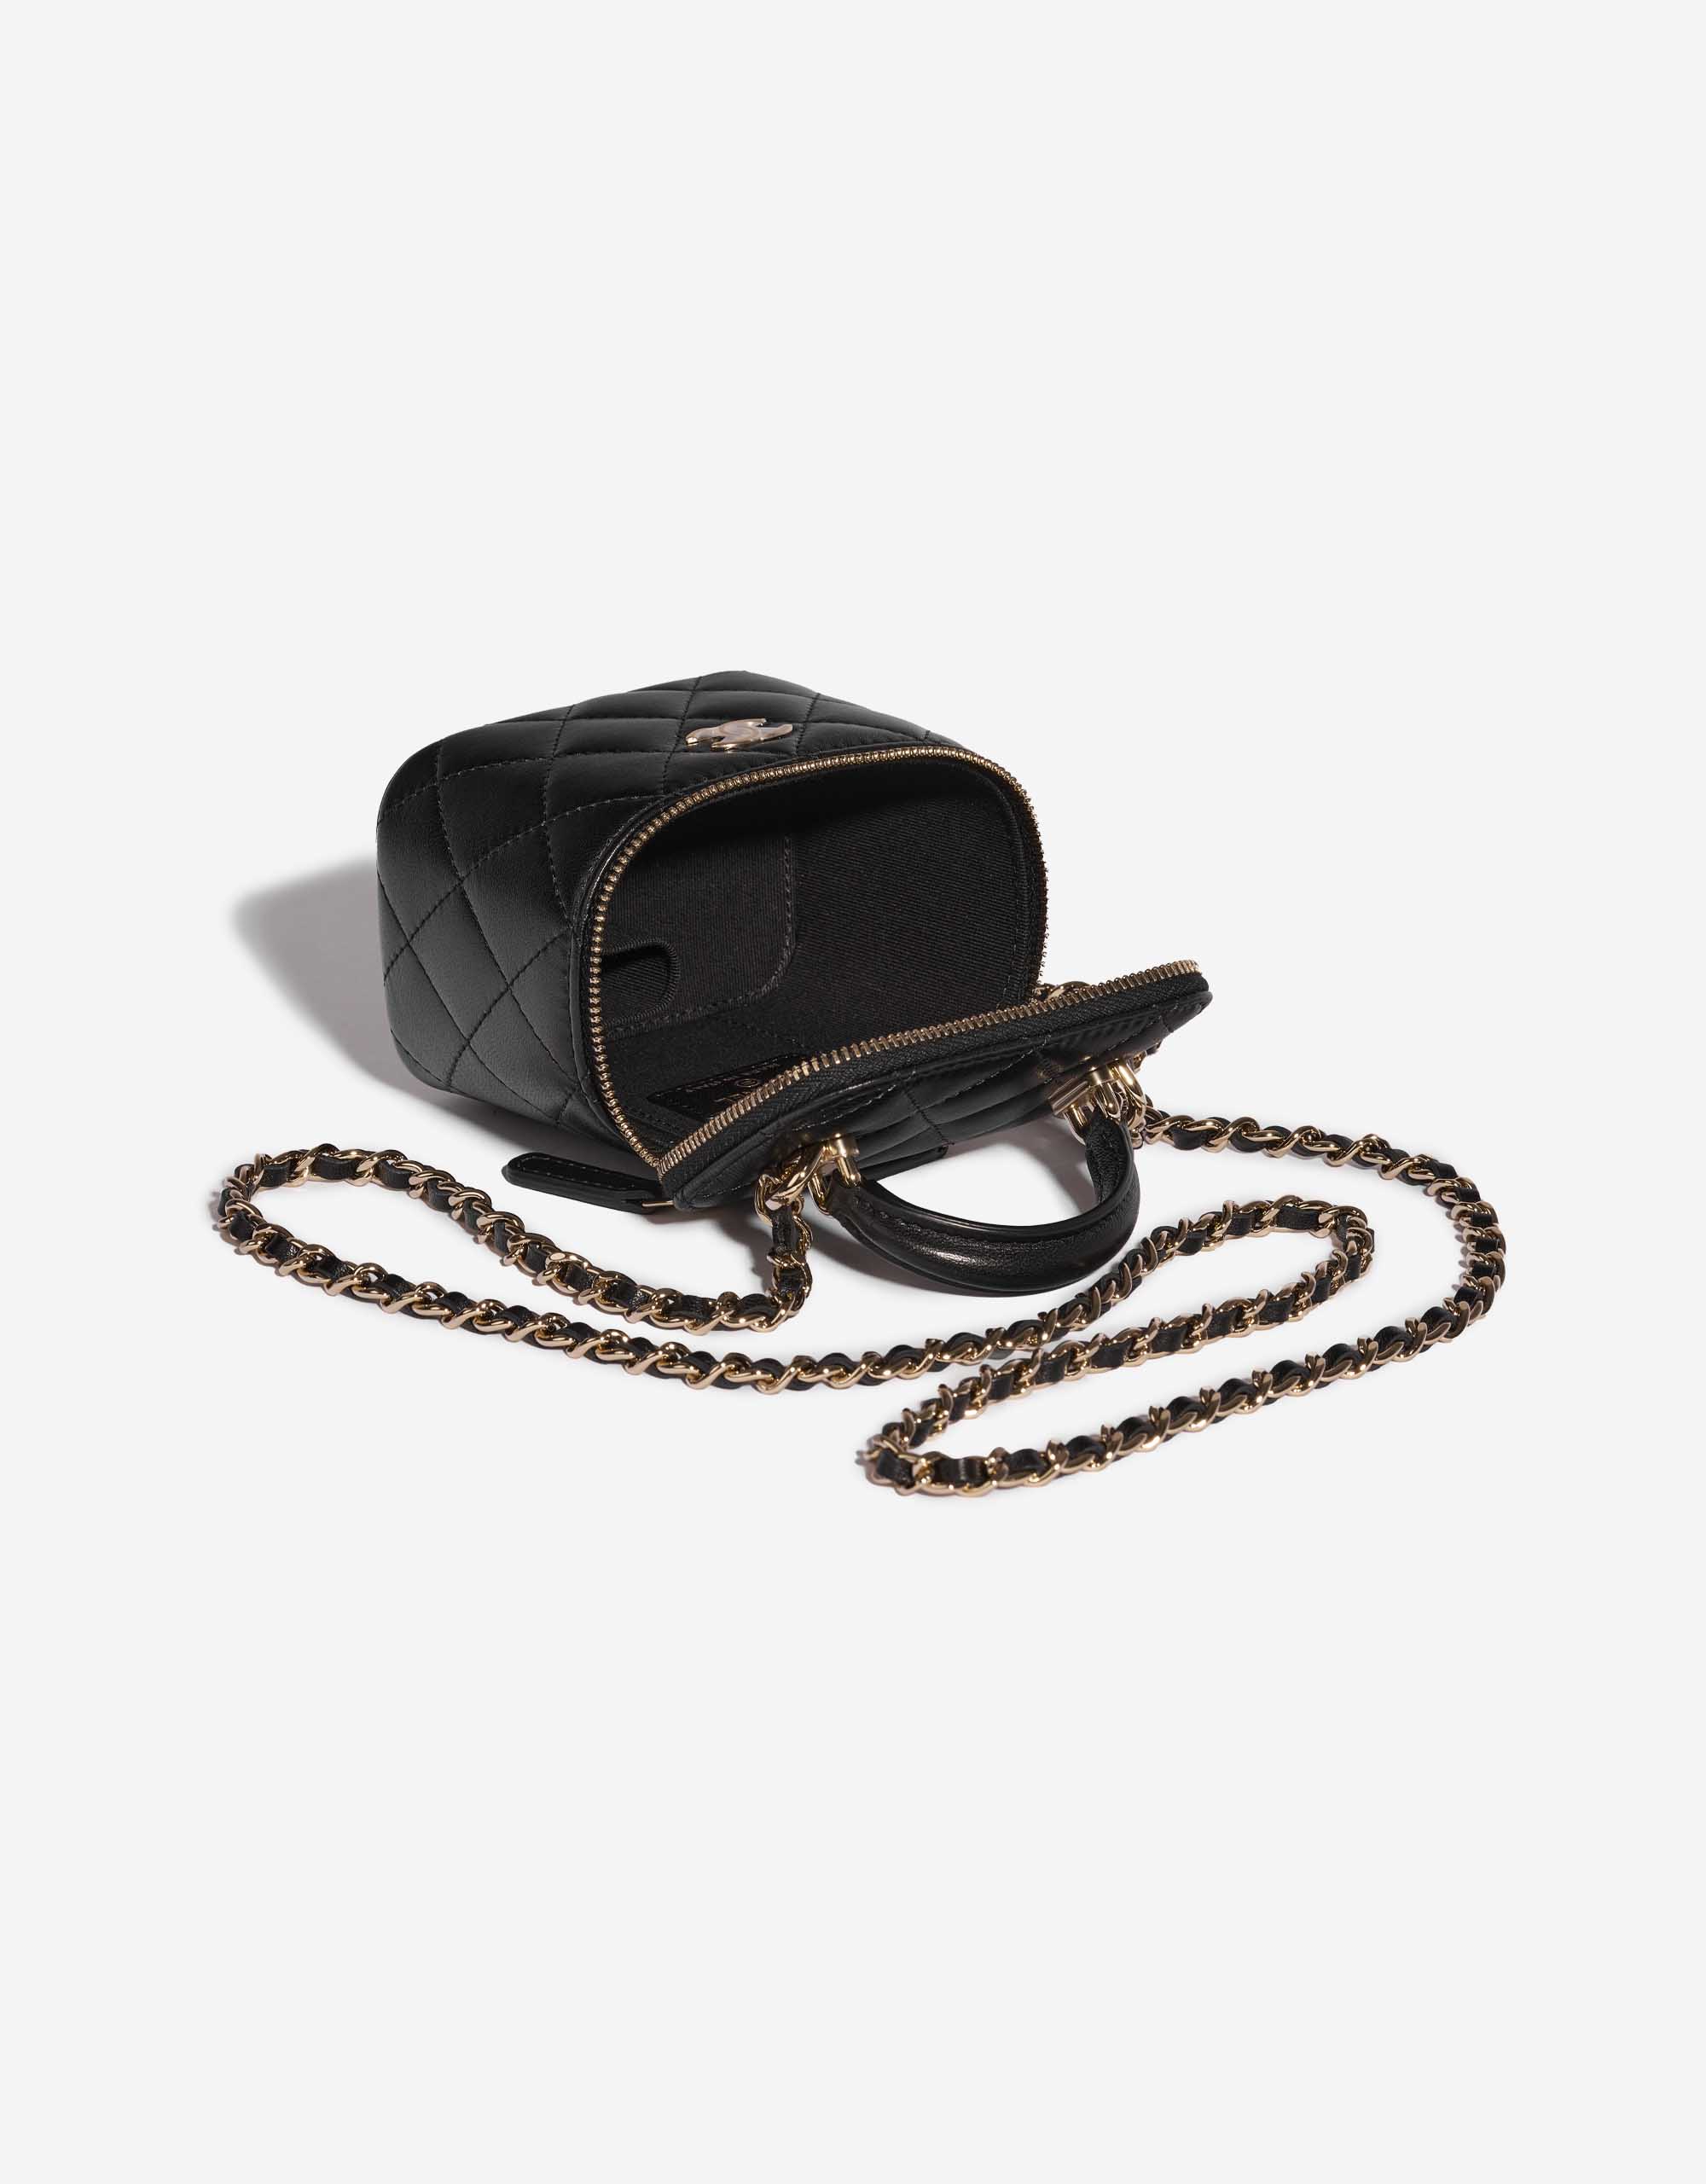 Pre-owned Chanel Tasche Vanity Case Small Lammleder Black Black Inside | Verkaufen Sie Ihre Designer-Tasche auf Saclab.com